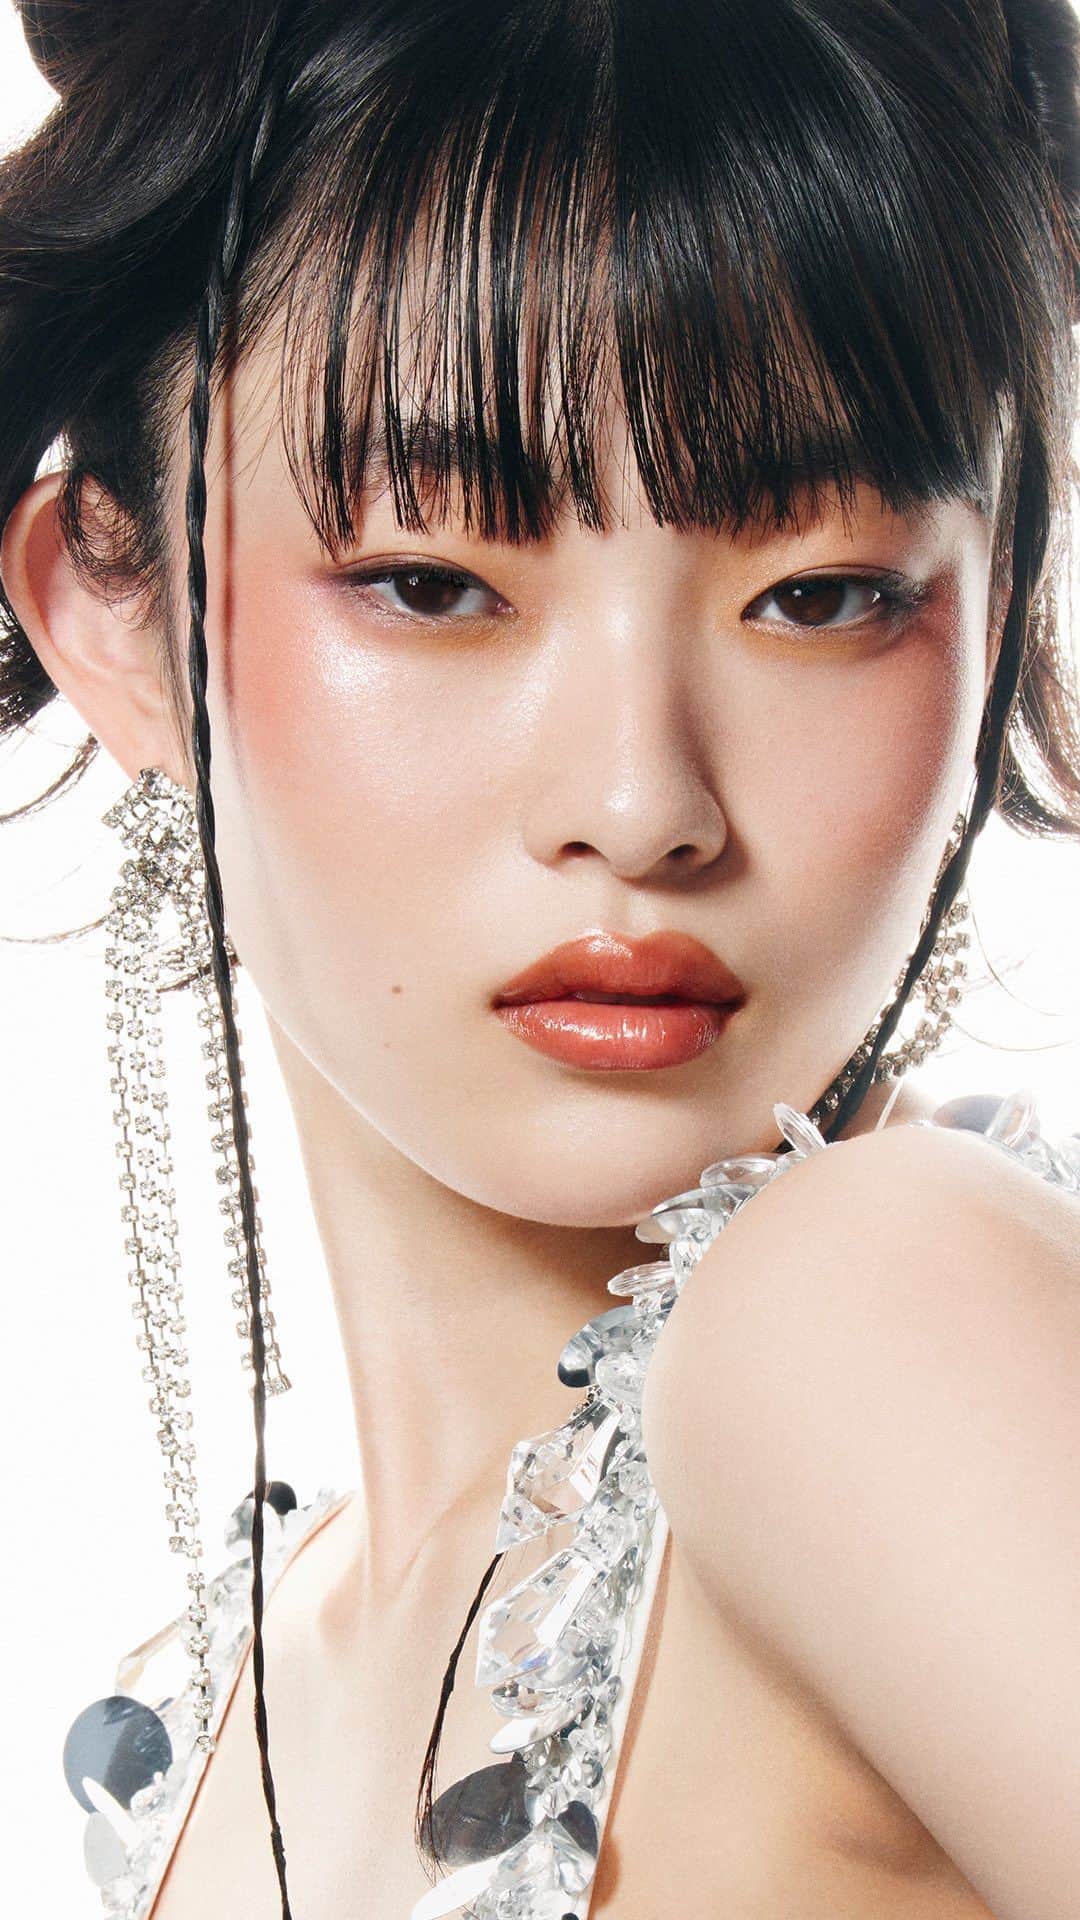 M∙A∙C Cosmetics Japanのインスタグラム：「M･A･Cが提案する2023S/Sメイクアップトレンド 重ねるほど、艶めくツヤ肌ルック #GLOWSTACK 💎  ツヤ感のあるアイテムを自由に重ねて、 どんな角度からもうるおいに満ちたあなただけの美しいツヤめきを見つけて✨  ＼明日 #GLOWSTACK キャンペーンスタート／ 5/12(金)からの期間中、キャンペーン対象製品を含む、税込9,900円以上のお買い上げでプレゼント！ 数量限定でなくなり次第終了となります。 ※店舗とオンラインではプレゼントの内容が異なります。  【対象製品】 ・# 170 シンセティック ラウンド スラント ブラシ ・M·A·C プレップ プライム リップ ・グロー プレイ ブラッシュ ・グロー プレイ リップ バーム ・ダズルシャドウ リキッド ・ライトフル C+ ティンティッド プライマー SPF 45 ・ライトフル C3 ラディアント ハイドレーション クリーム ・ライトフル C3 ラディアント ハイドレーション スキン エマルジョン ・ライトフル C3 ラディアント ハイドレーション スキン ローション ・ラスターガラス リップスティック ・M·A·C プレップ プライム リップ (限定パッケージ)  【対象店舗別プレゼント内容】 🎁M·A·C カウンター (対象店舗) : ライト付きオリジナルミラー 対象店舗 : 札幌大丸、新宿伊勢丹、ルミネエスト新宿、池袋西武、銀座三越、渋谷西武、北千住マルイ、 横浜高島屋、千葉そごう、JR名古屋高島屋、名古屋松坂屋、梅田阪急、心斎橋大丸、 あべのハルカス近鉄本店、大阪高島屋、神戸大丸、JR京都伊勢丹、京都高島屋、福岡岩田屋、鶴屋  🎁公式オンラインショップ : オリジナルポーチ & ハイパーリアル セラマイザー デラックスサンプル 4mL  #MACTrend  #MACコスメ #MACライトフルC #MACグロープレイ #グロースキン #MACラスターガラス #ガラスリップ」